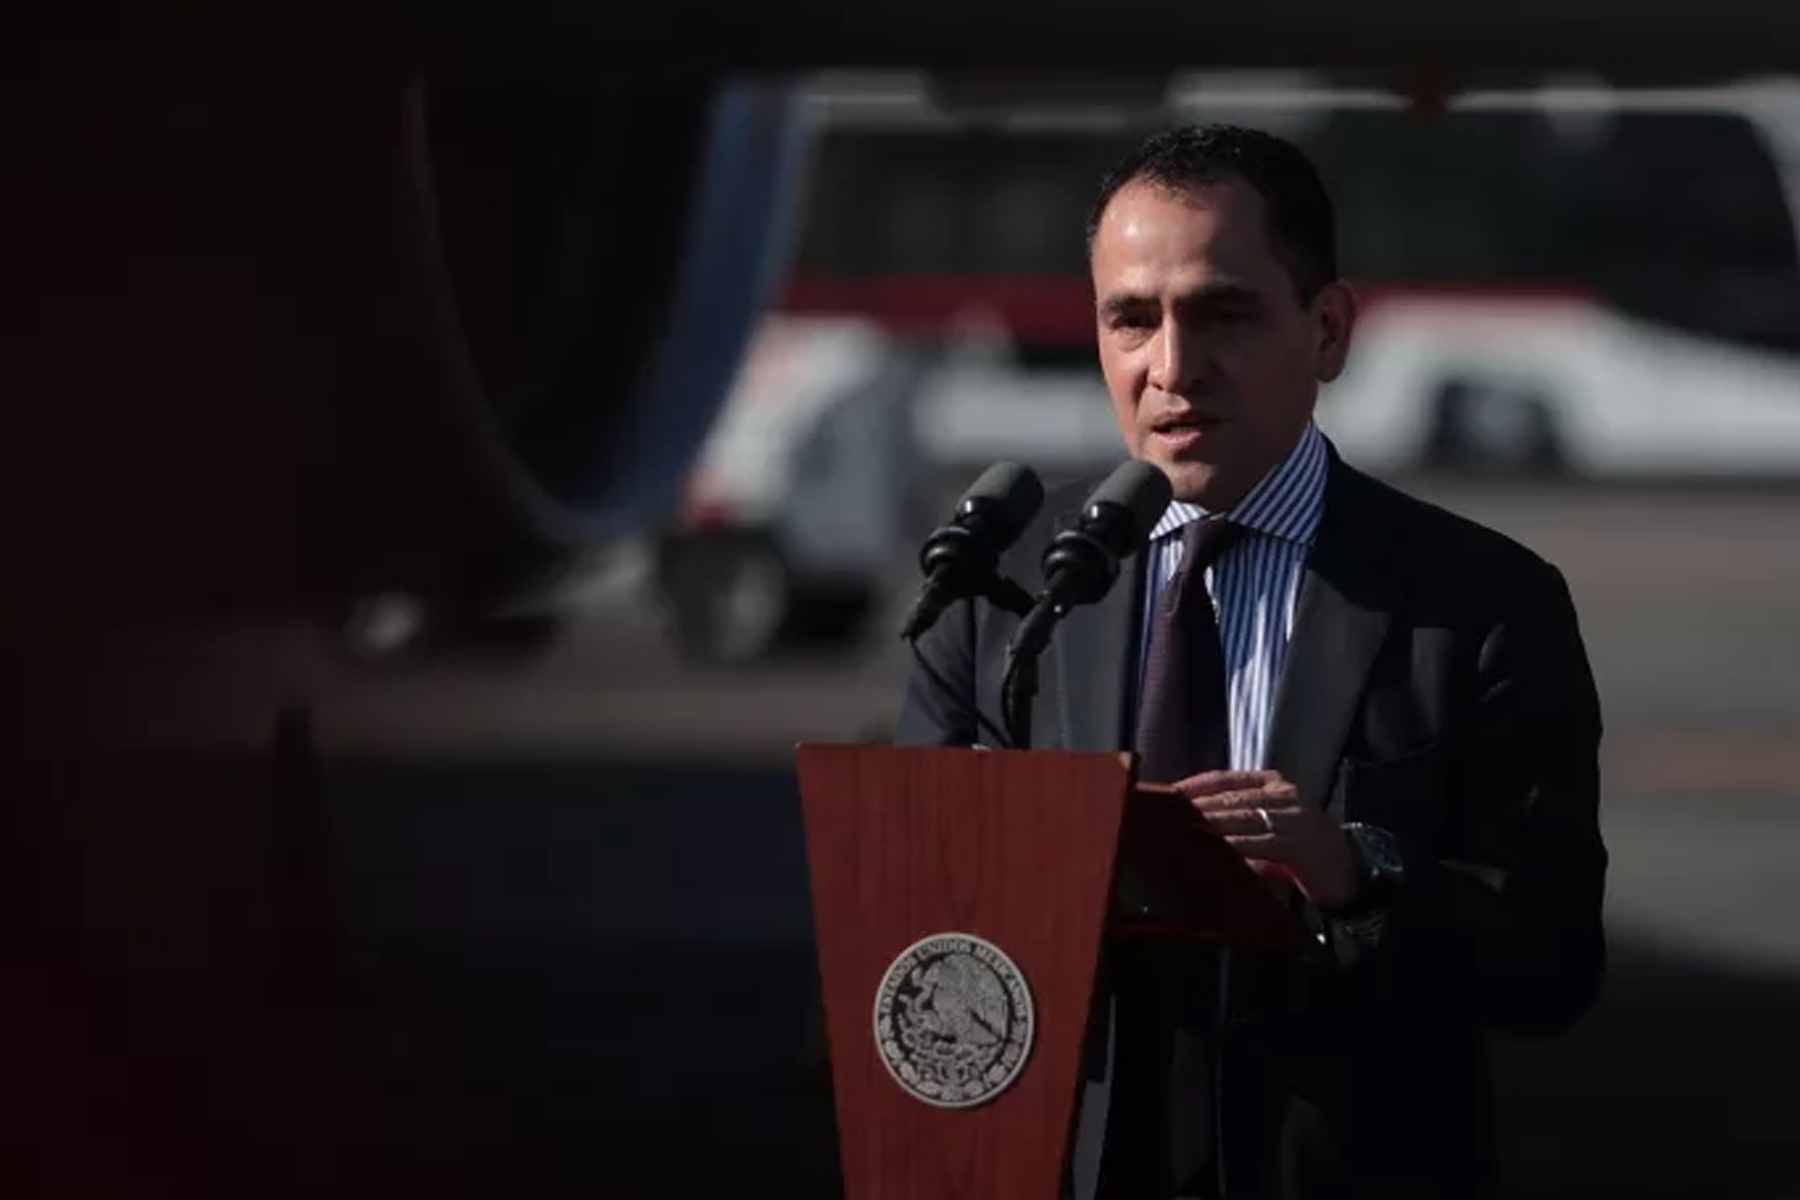 وزیر دارایی مکزیک تأکید کرد که کریپتوها در نظام مالی این کشور ممنوع هستند